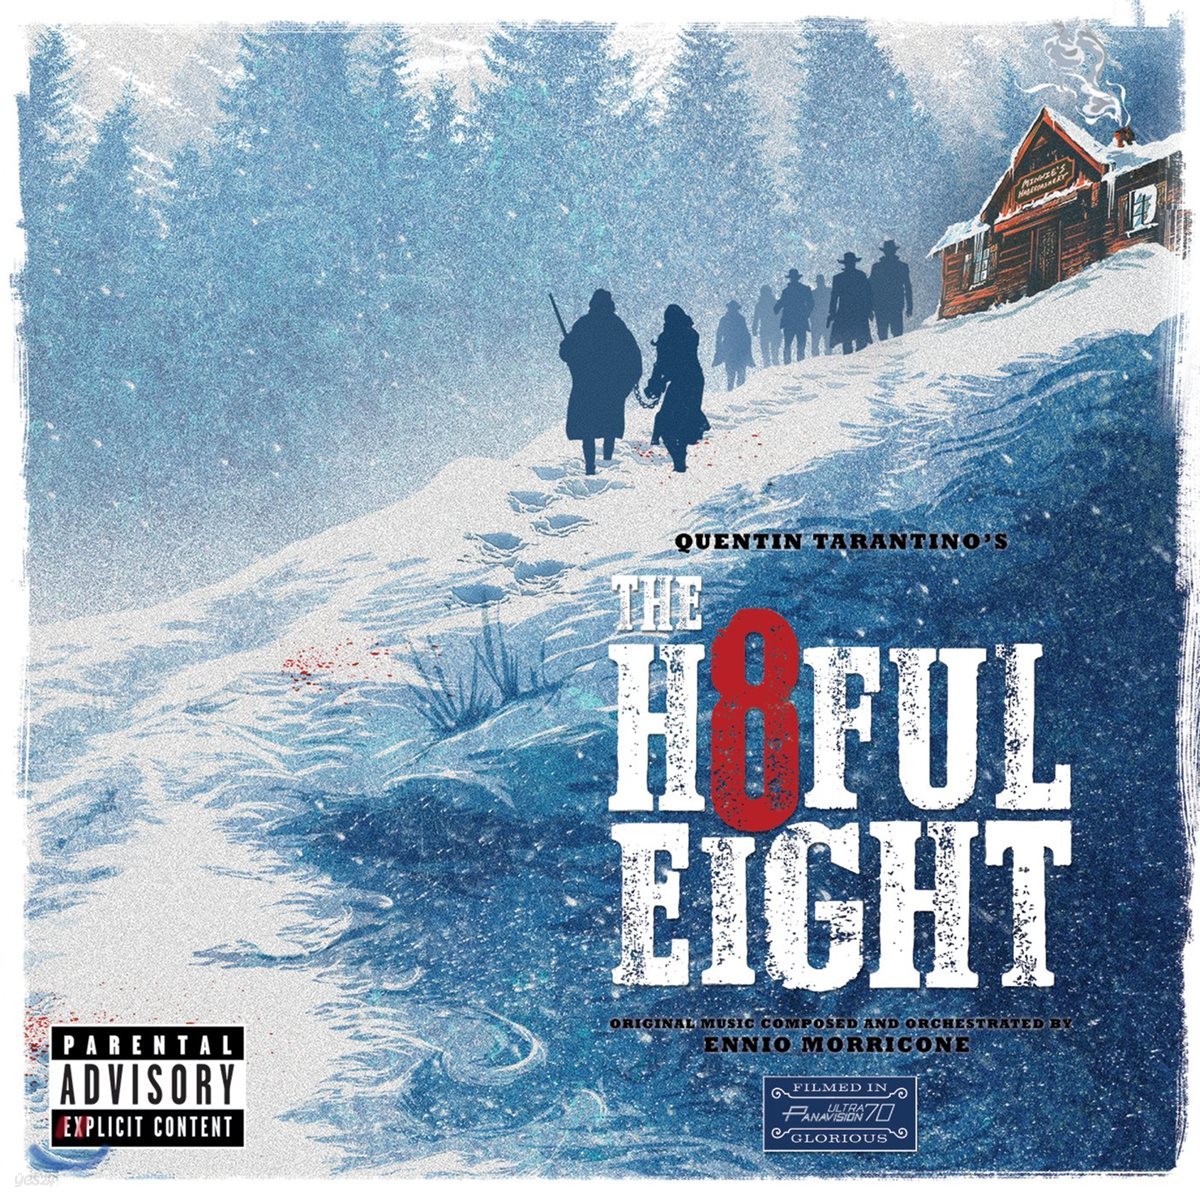 헤이트풀 8 영화음악 (The Hateful Eight OST by Ennio Morricone) [2LP]